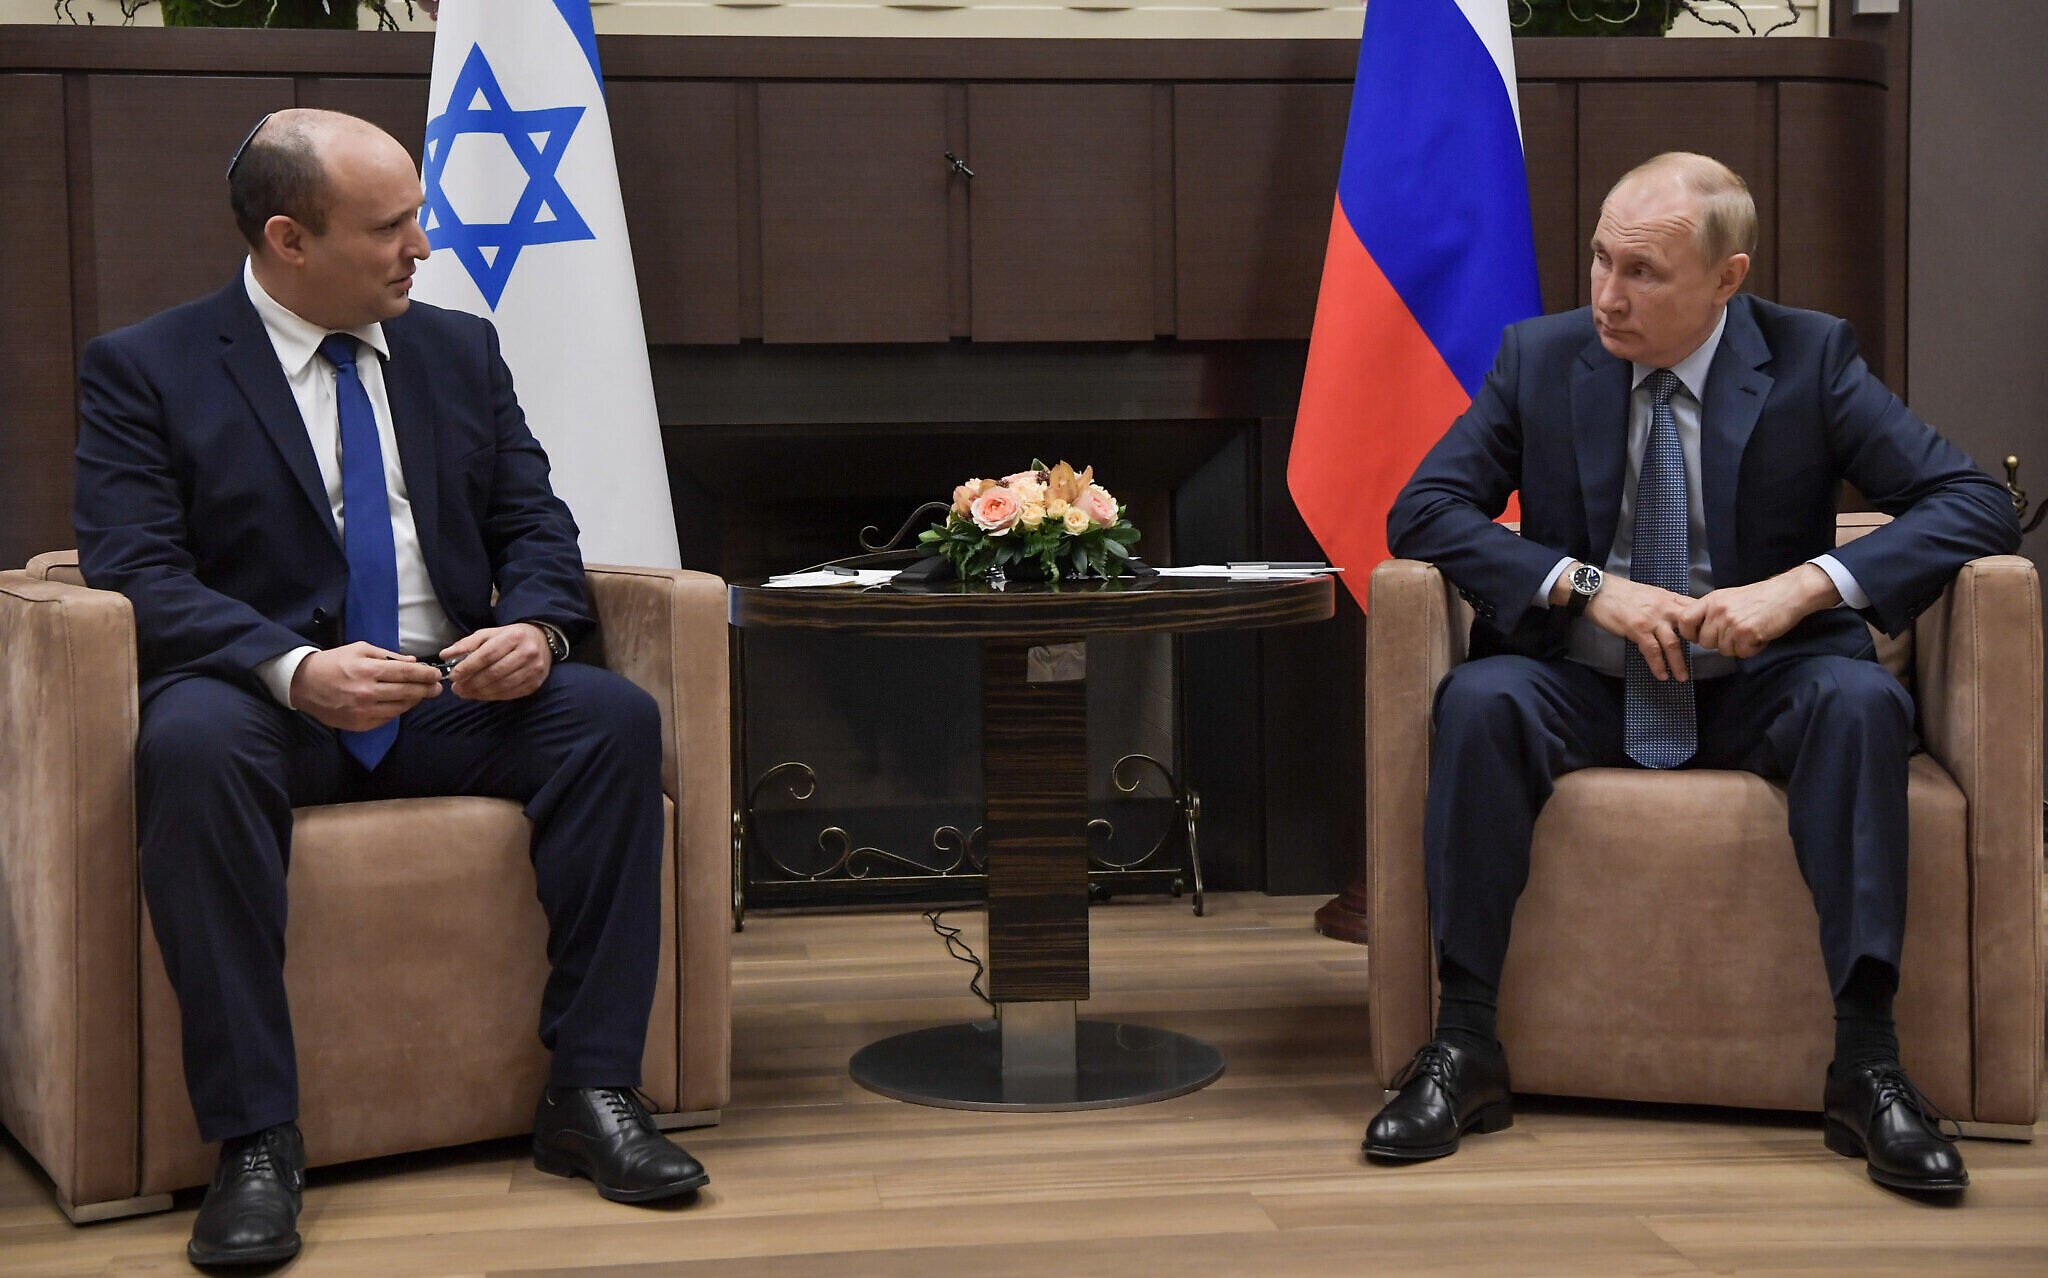  Putin i-a prezentat scuze premierului Bennett pentru afirmaţia lui Lavrov cu privire la Hitler